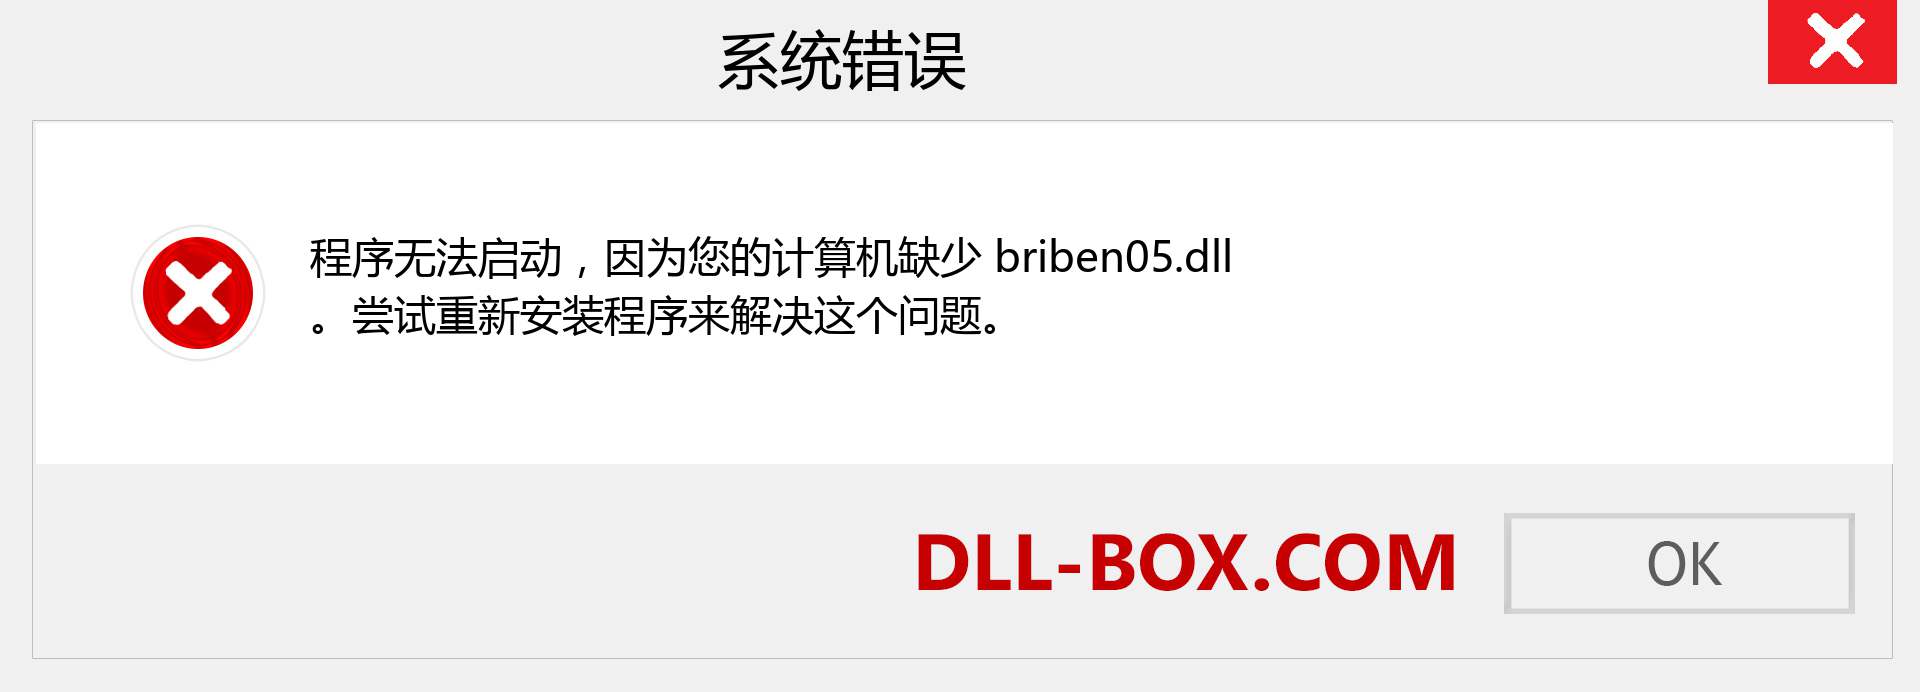 briben05.dll 文件丢失？。 适用于 Windows 7、8、10 的下载 - 修复 Windows、照片、图像上的 briben05 dll 丢失错误